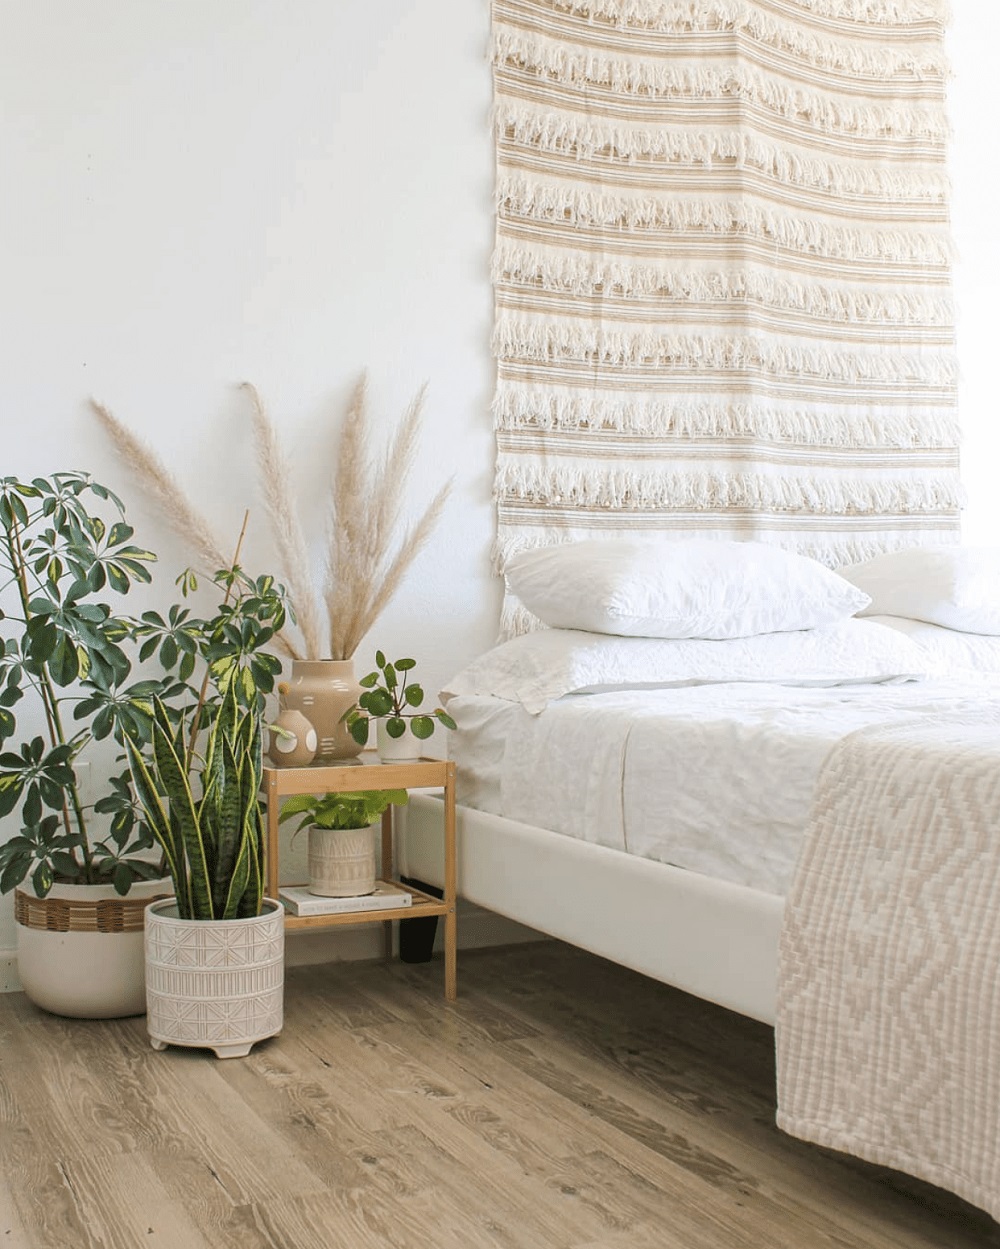 Một tấm thảm dệt thủ công treo tường đầu giường và cỏ pampas sẽ tô điểm cho phòng ngủ thật xinh mà chẳng cần bổ sung quá nhiều màu sắc rực rỡ đúng không nào?